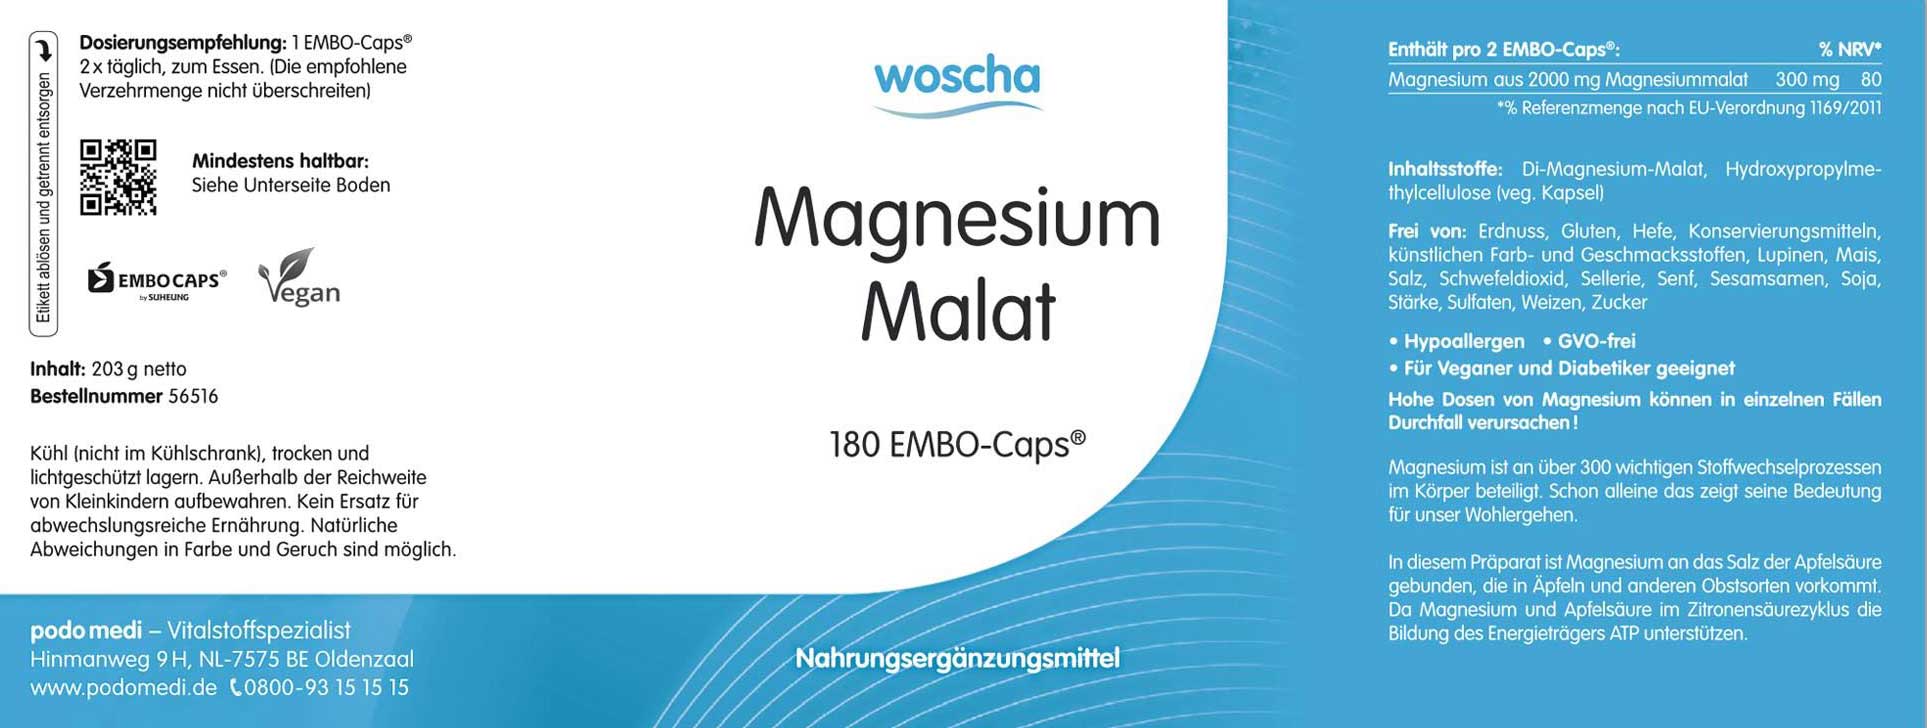 Woscha Magnesium Malat von podo medi beinhaltet 180 Kapseln Etikett